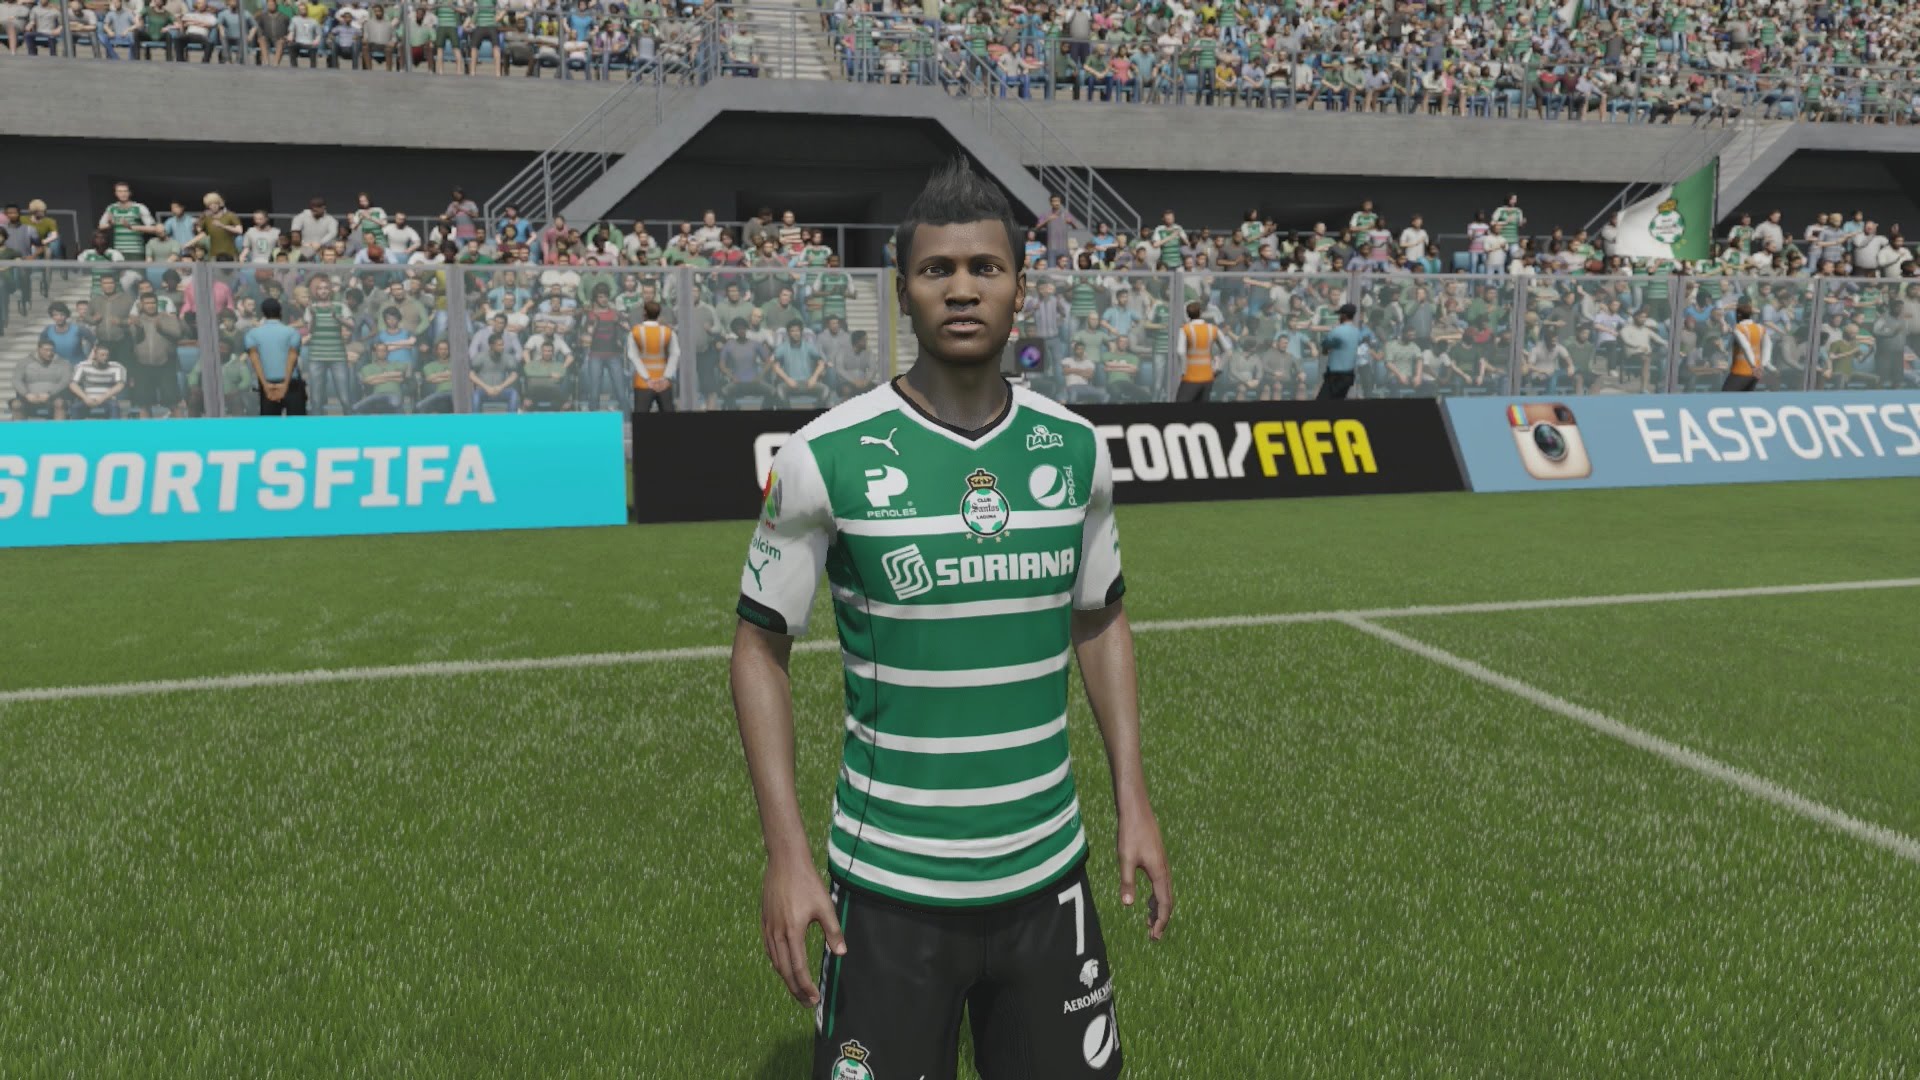 FIFA 15 - Santos Laguna Player Faces - Next-Gen Gameplay 1080p ...